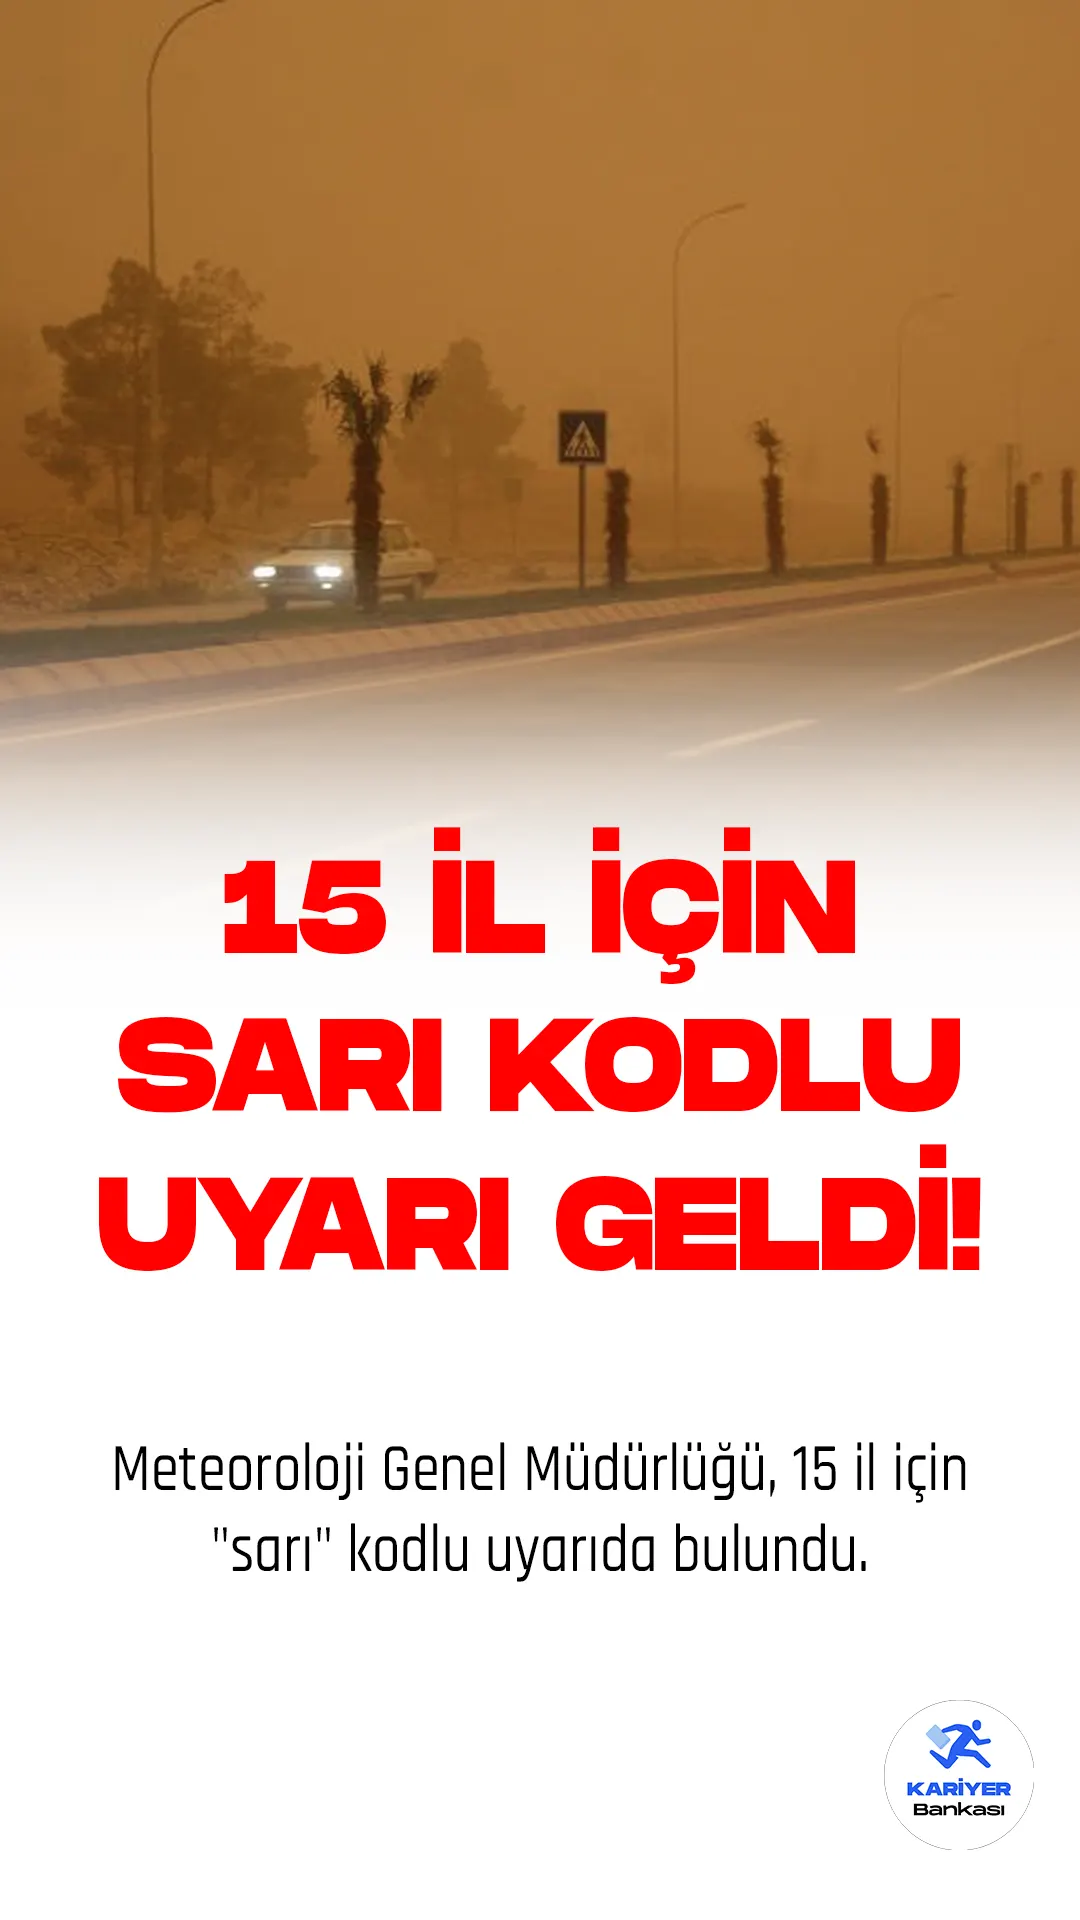 Meteoroloji Genel Müdürlüğü, Türkiye'nin doğusunda yer alan 15 il için "sarı" kodlu uyarıda bulundu.